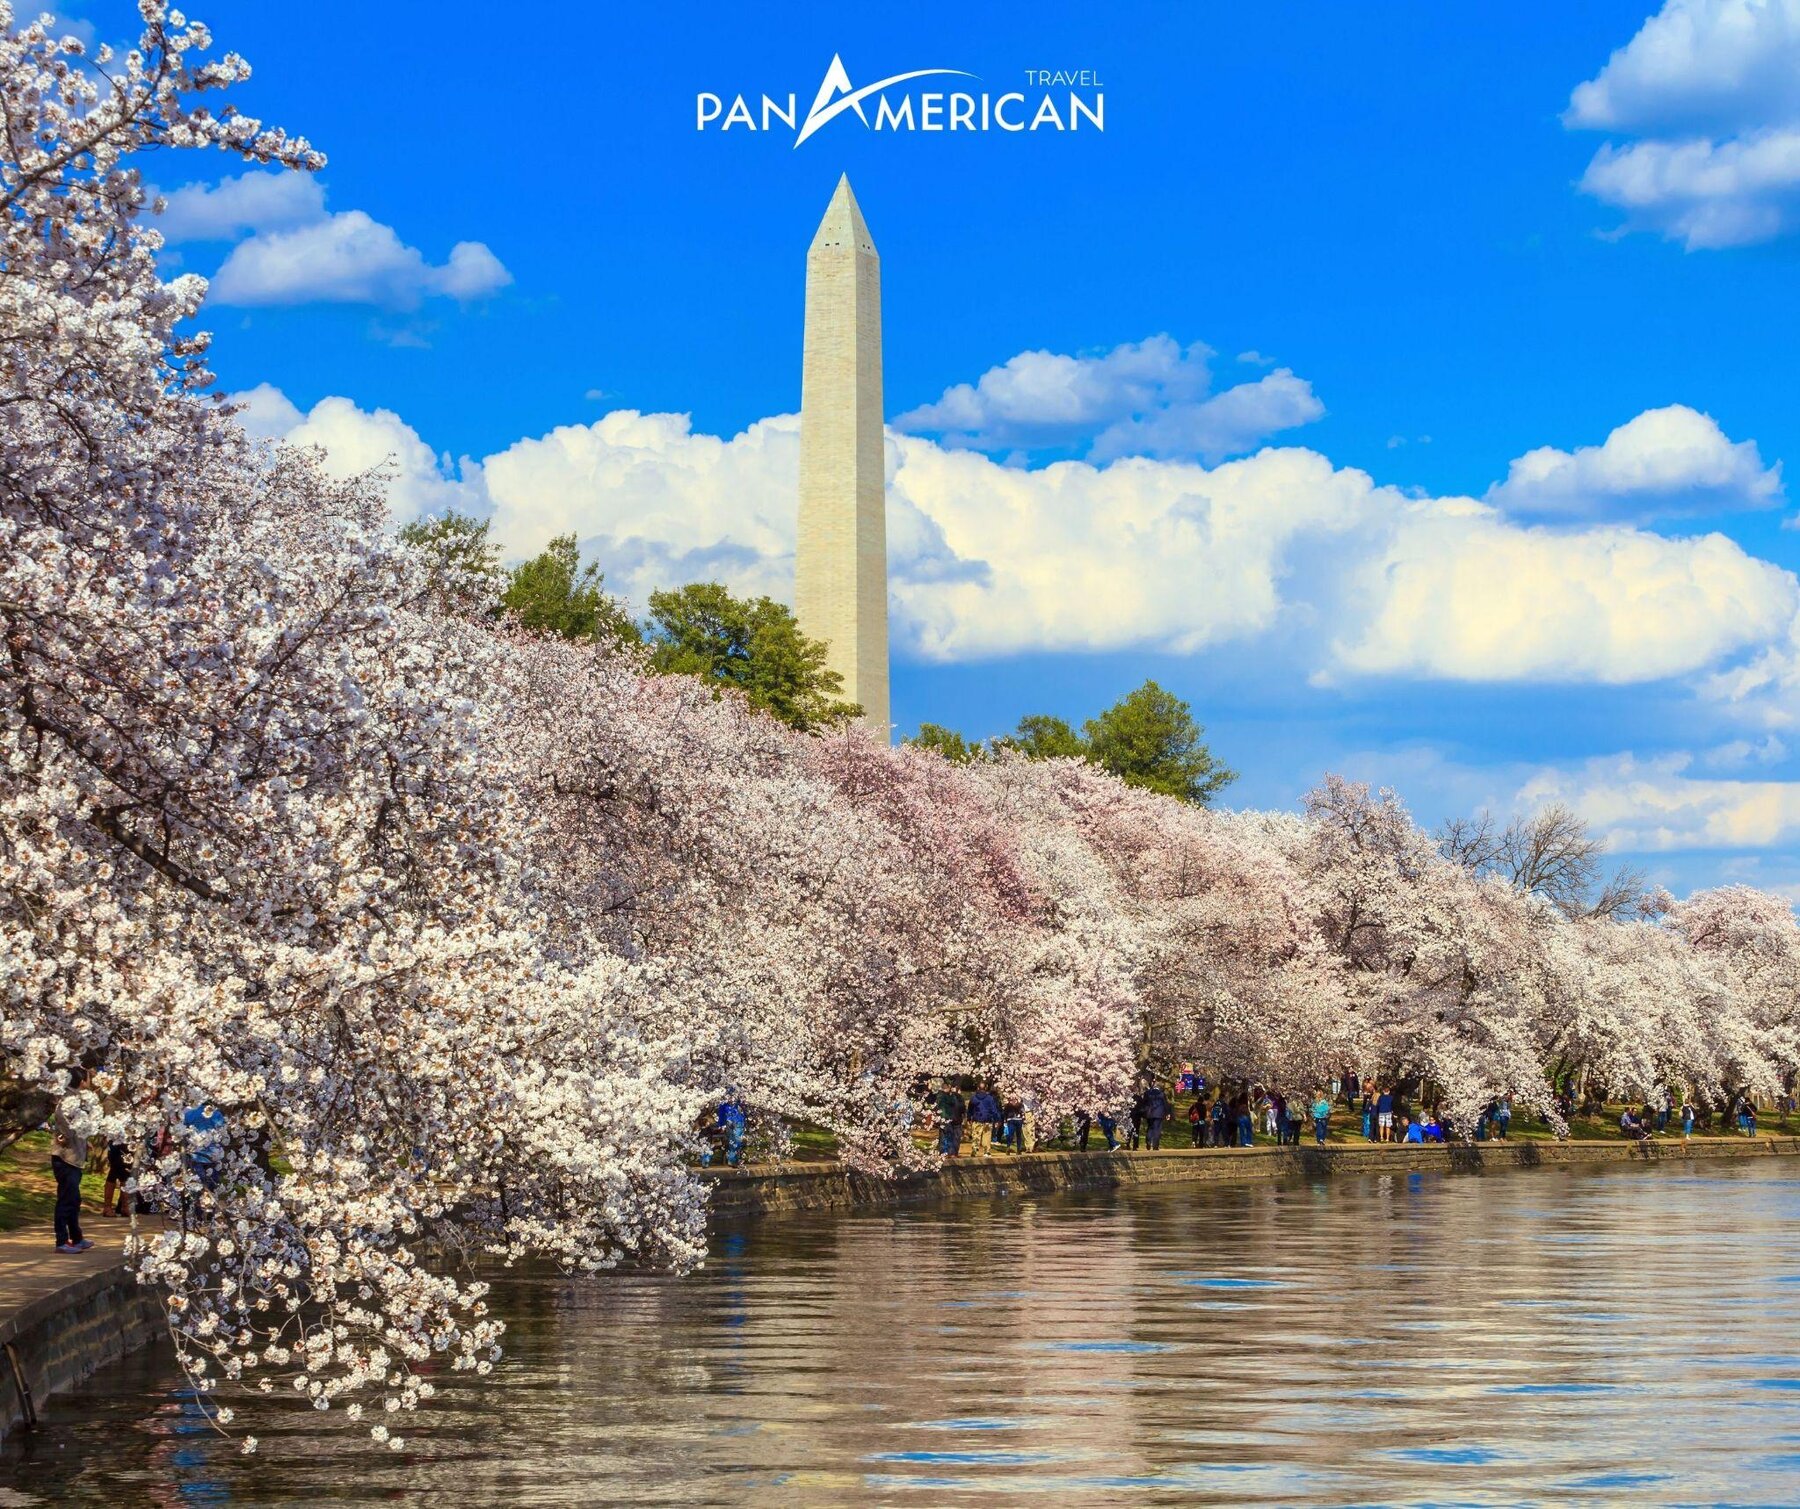 Mùa xuân rực rỡ với hoa anh đào ở Washington D.C